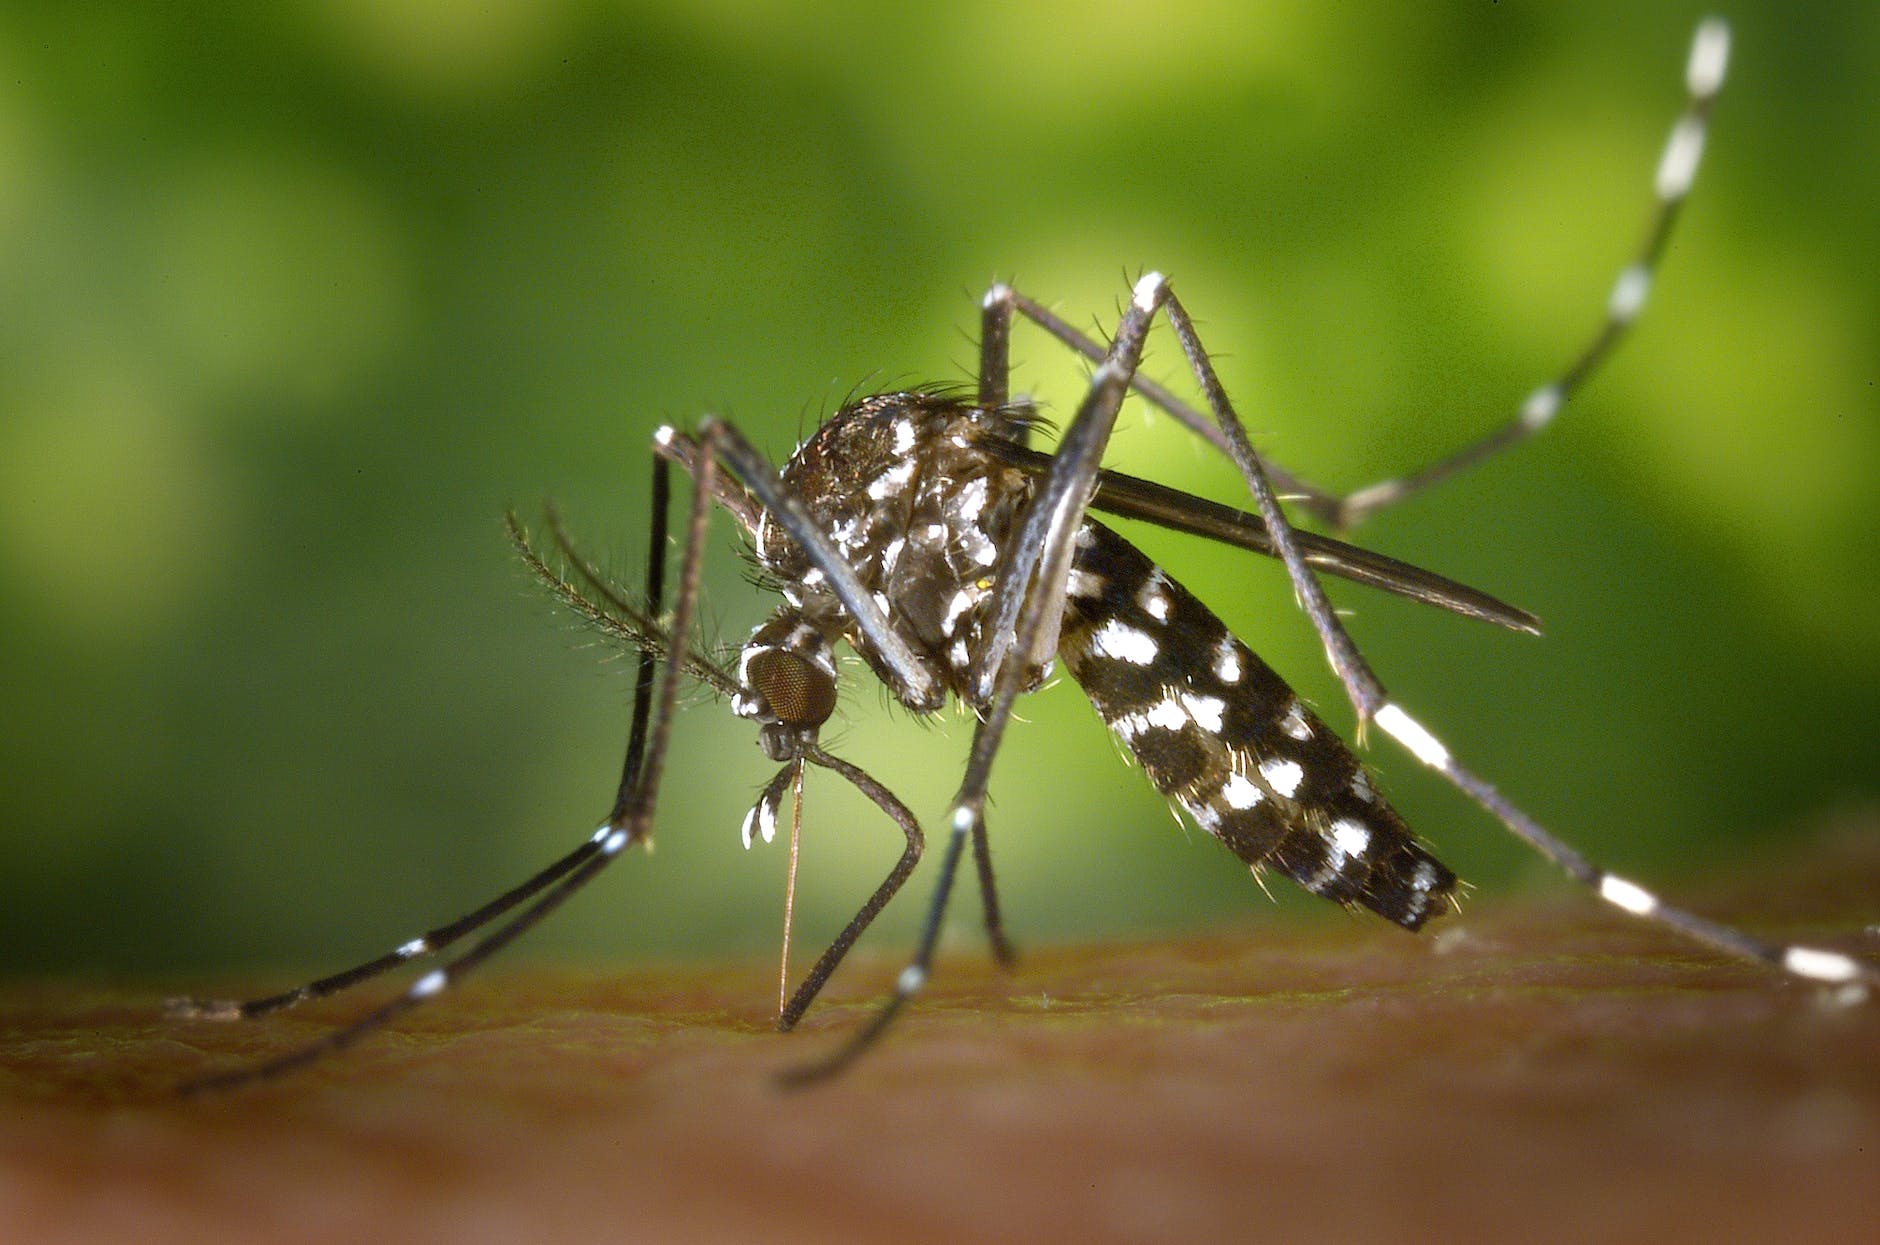 Inabanga Mayor Urges Residents to Fight Dengue Amid Rising Cases